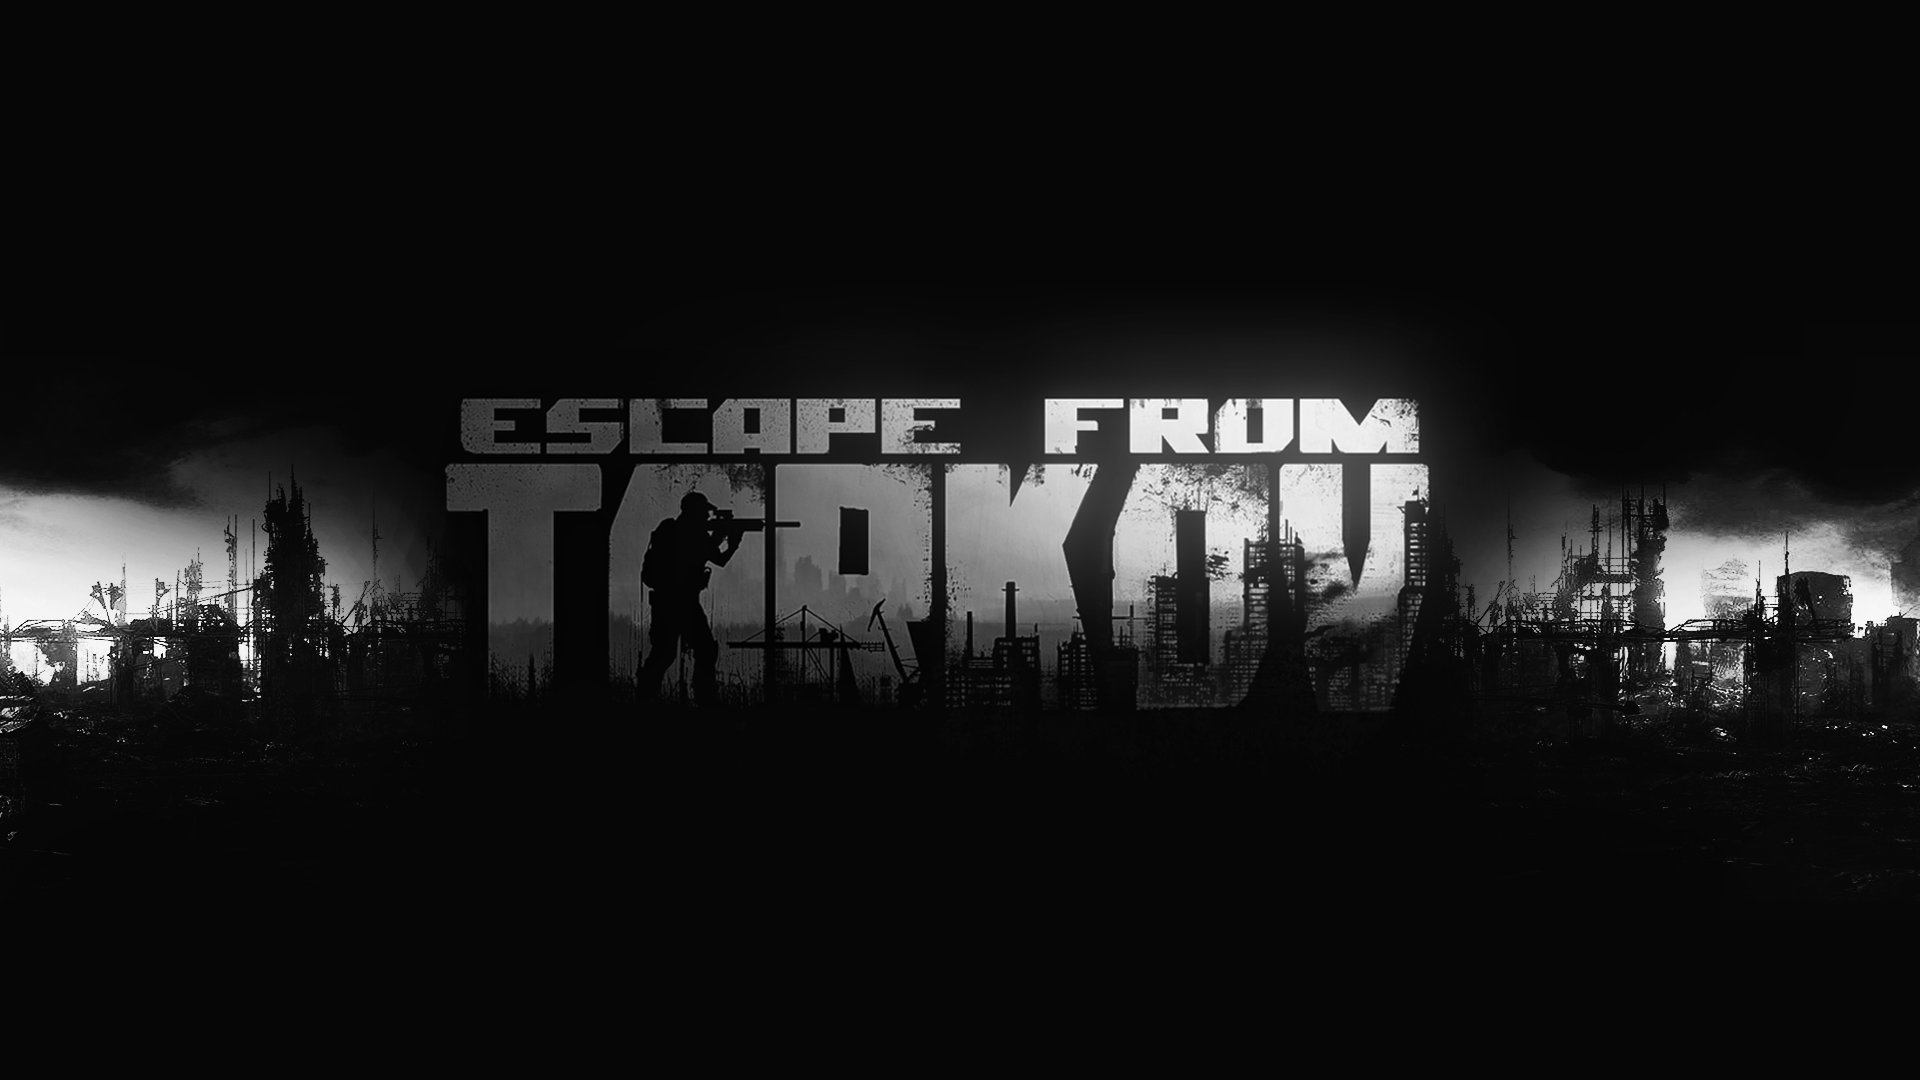 Escape From Tarkov Free Download